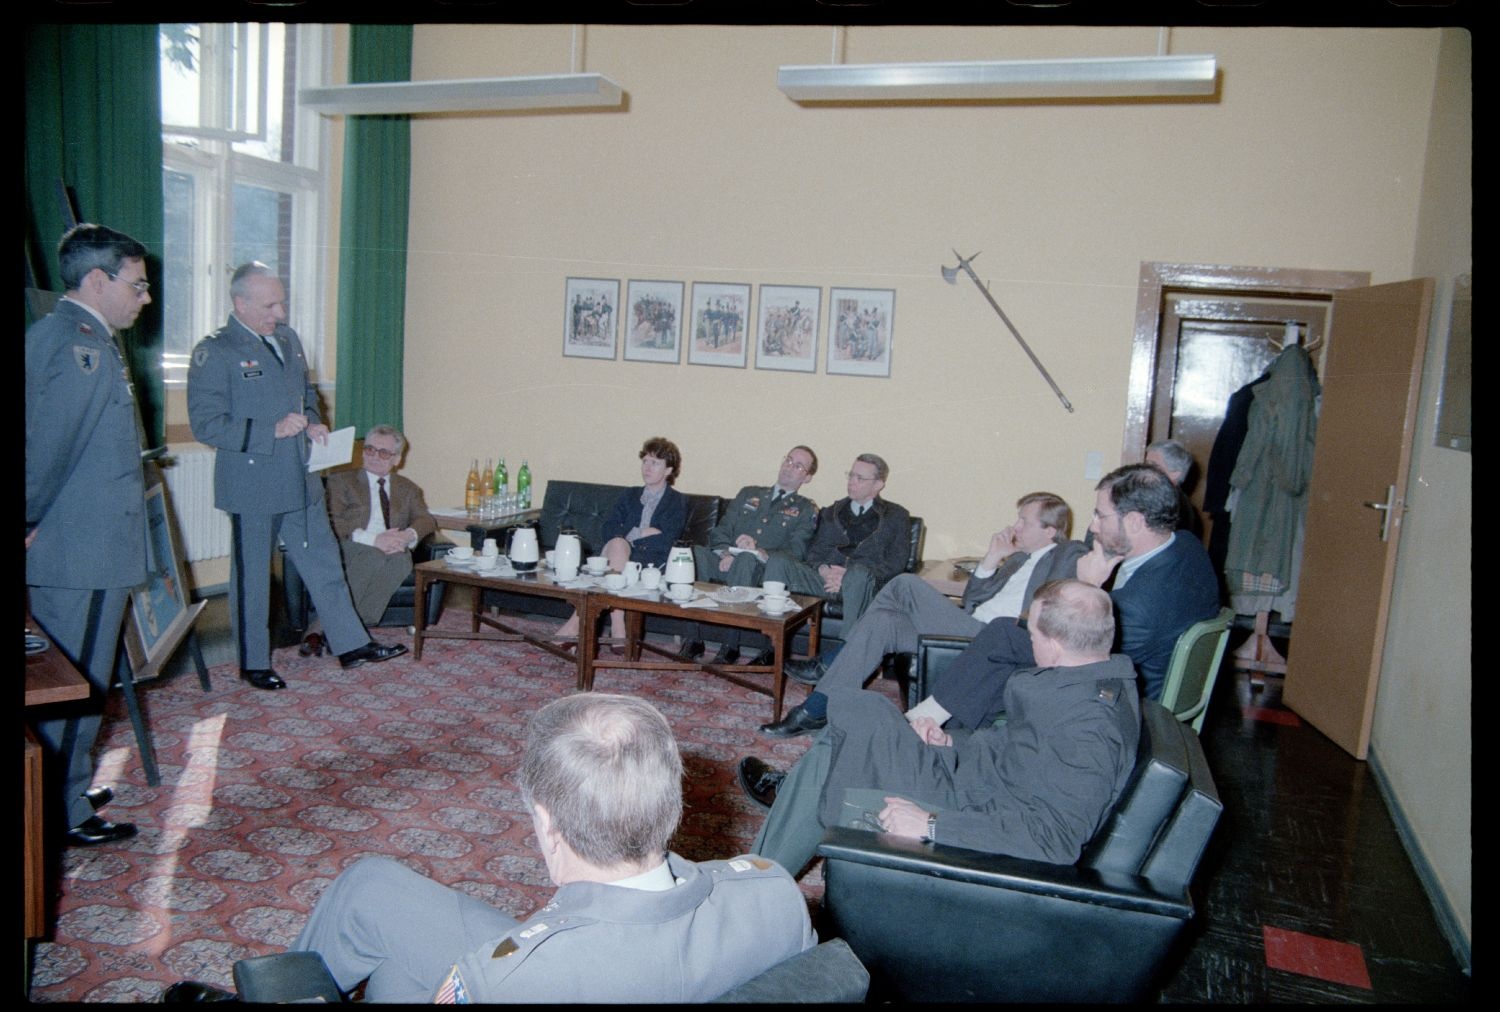 Fotografie: Besuch von Eberhard Diepgen, Regierender Bürgermeister von Berlin, beim 6941st Guard Battalion in Berlin-Lichterfelde